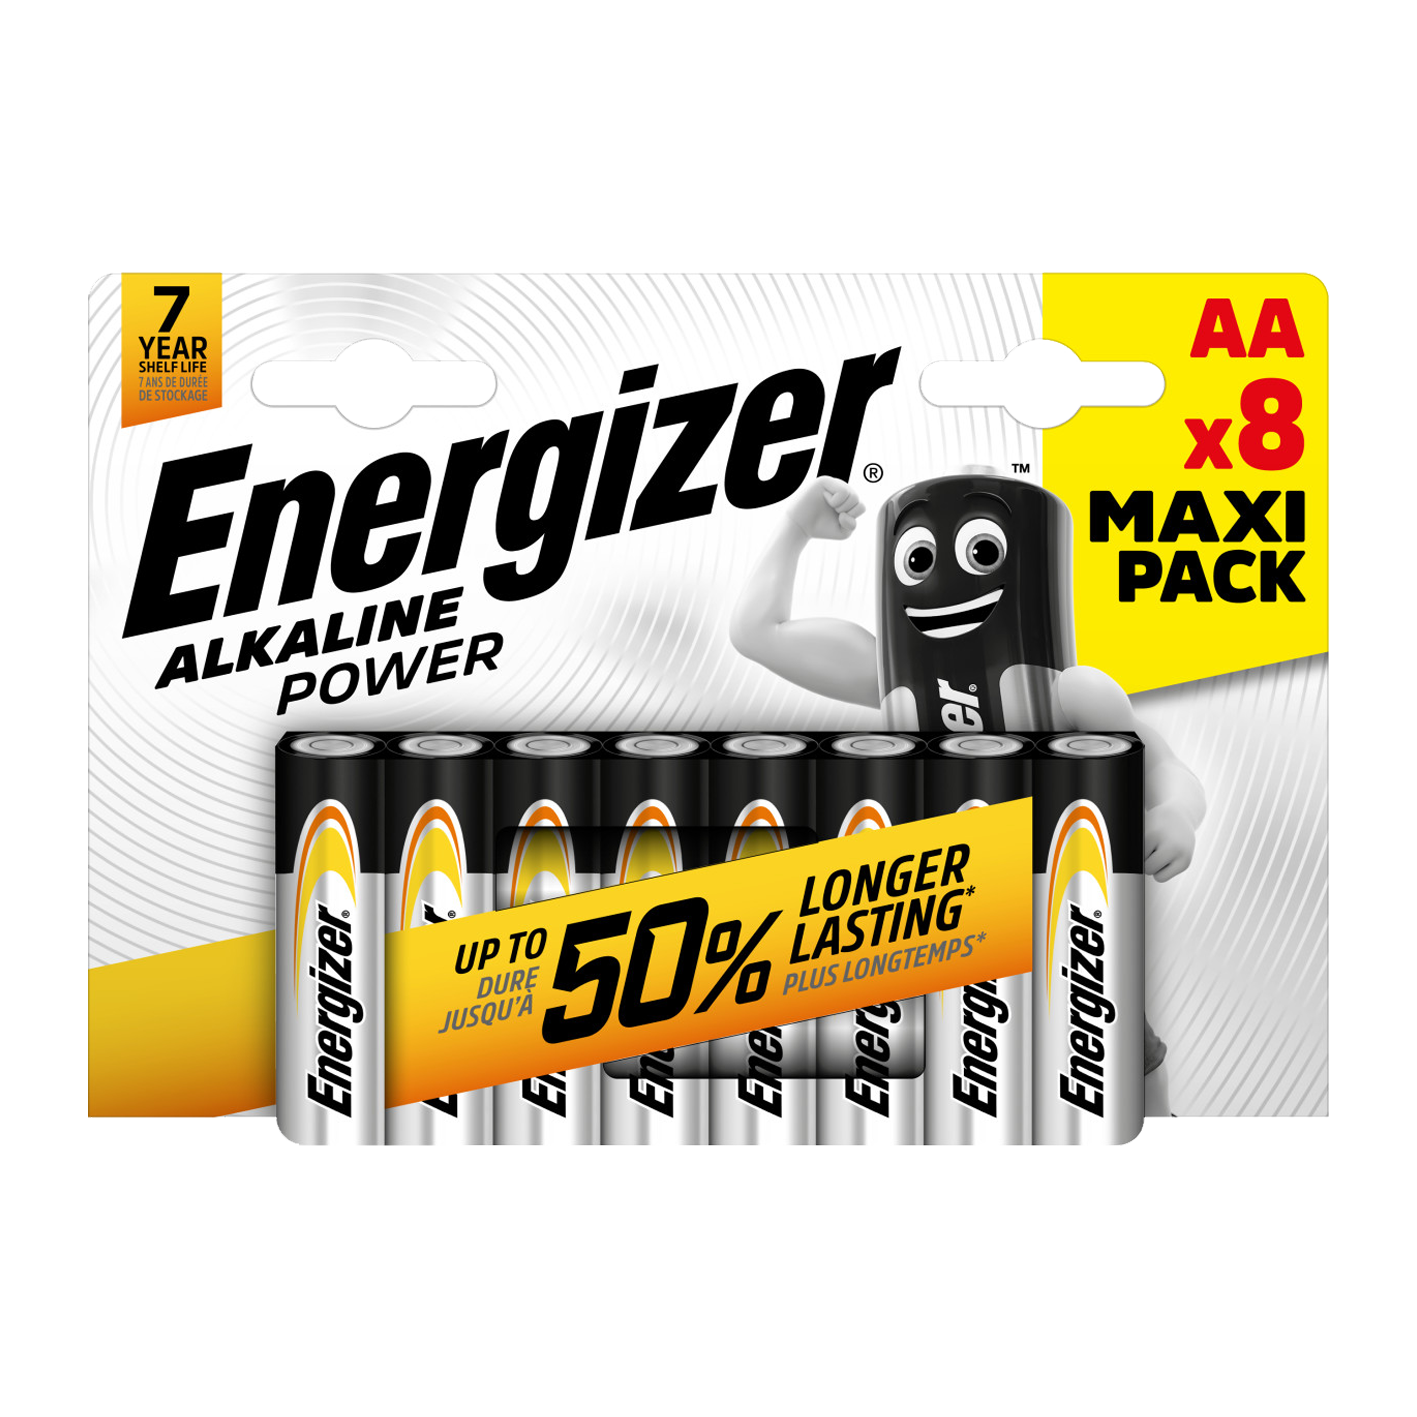 Energizer AA alcalino Power, paquete de 8